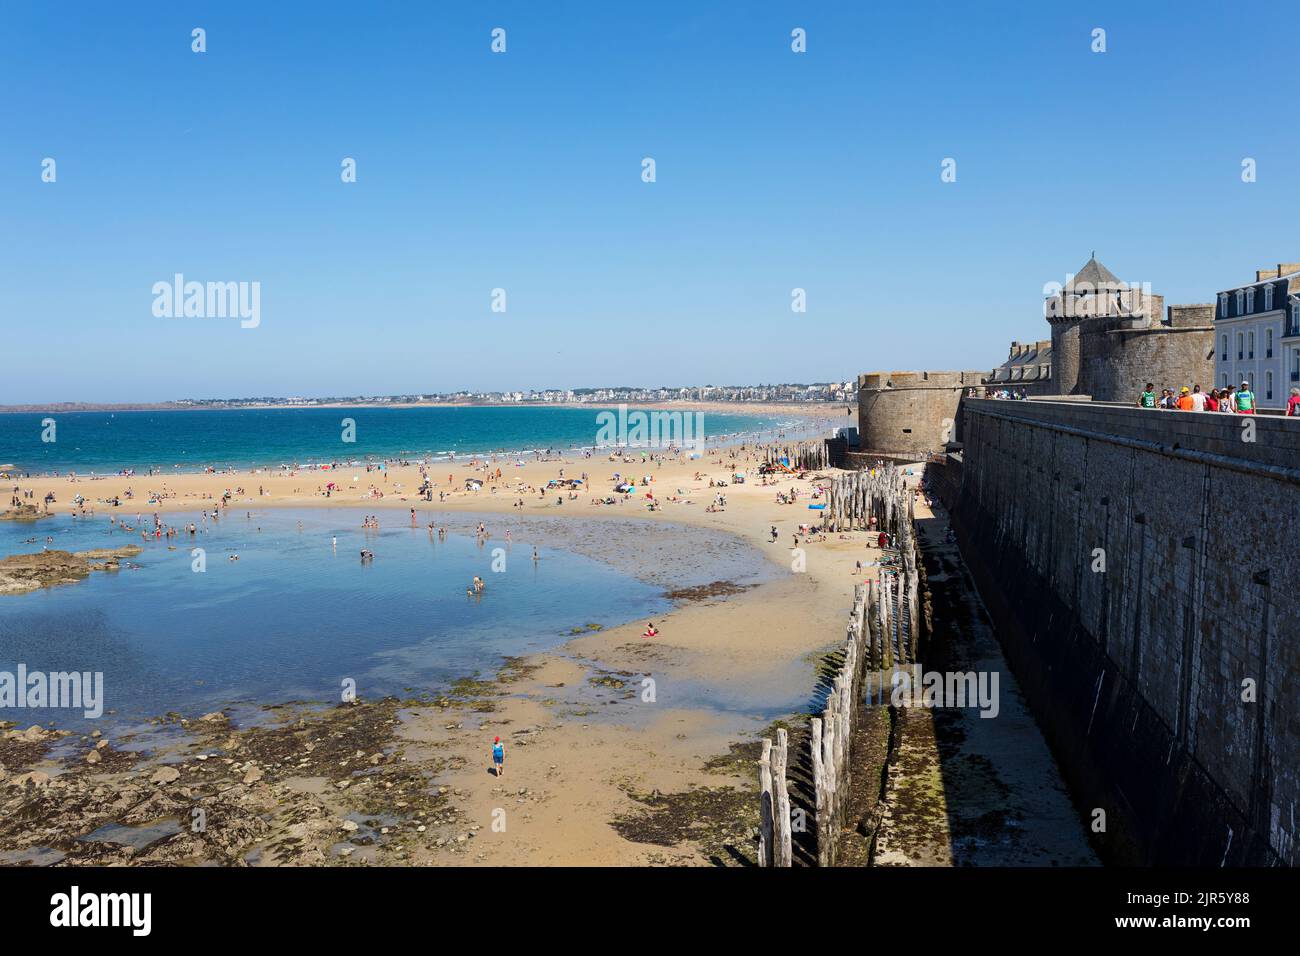 Nuotare e prendere il sole alla spiaggia di Saint Malo, lungo le mura medievali della città, Bretagna, Francia Foto Stock